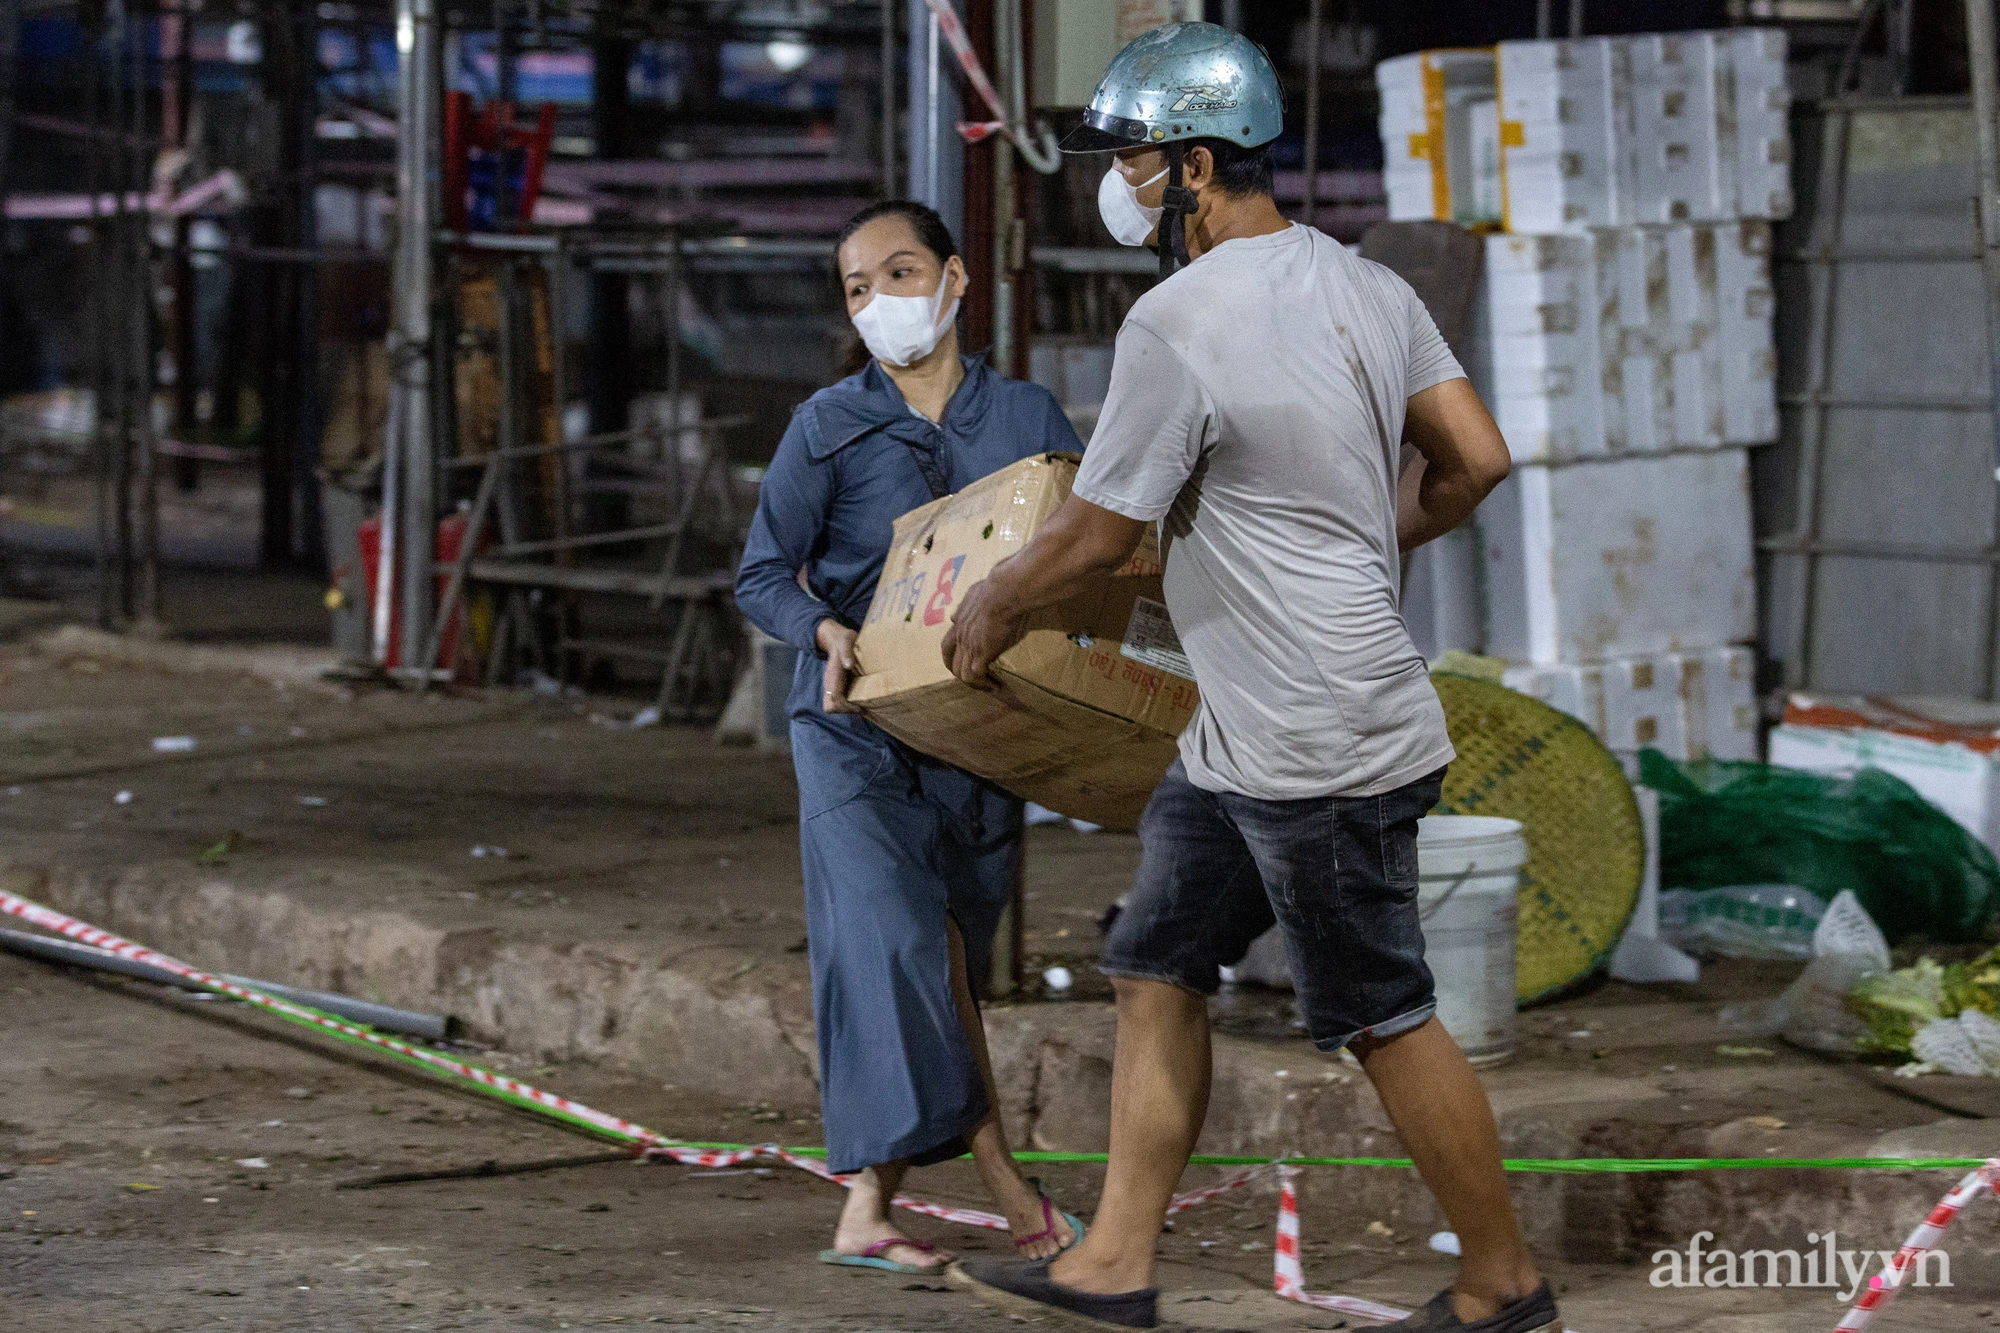 Tiểu thương chợ Phùng Khoang hối hả thu dọn hàng hóa trong đêm sau khi người phụ nữ bán rau tại chợ bất ngờ nhận kết quả dương tính SARS-CoV-2 - Ảnh 6.